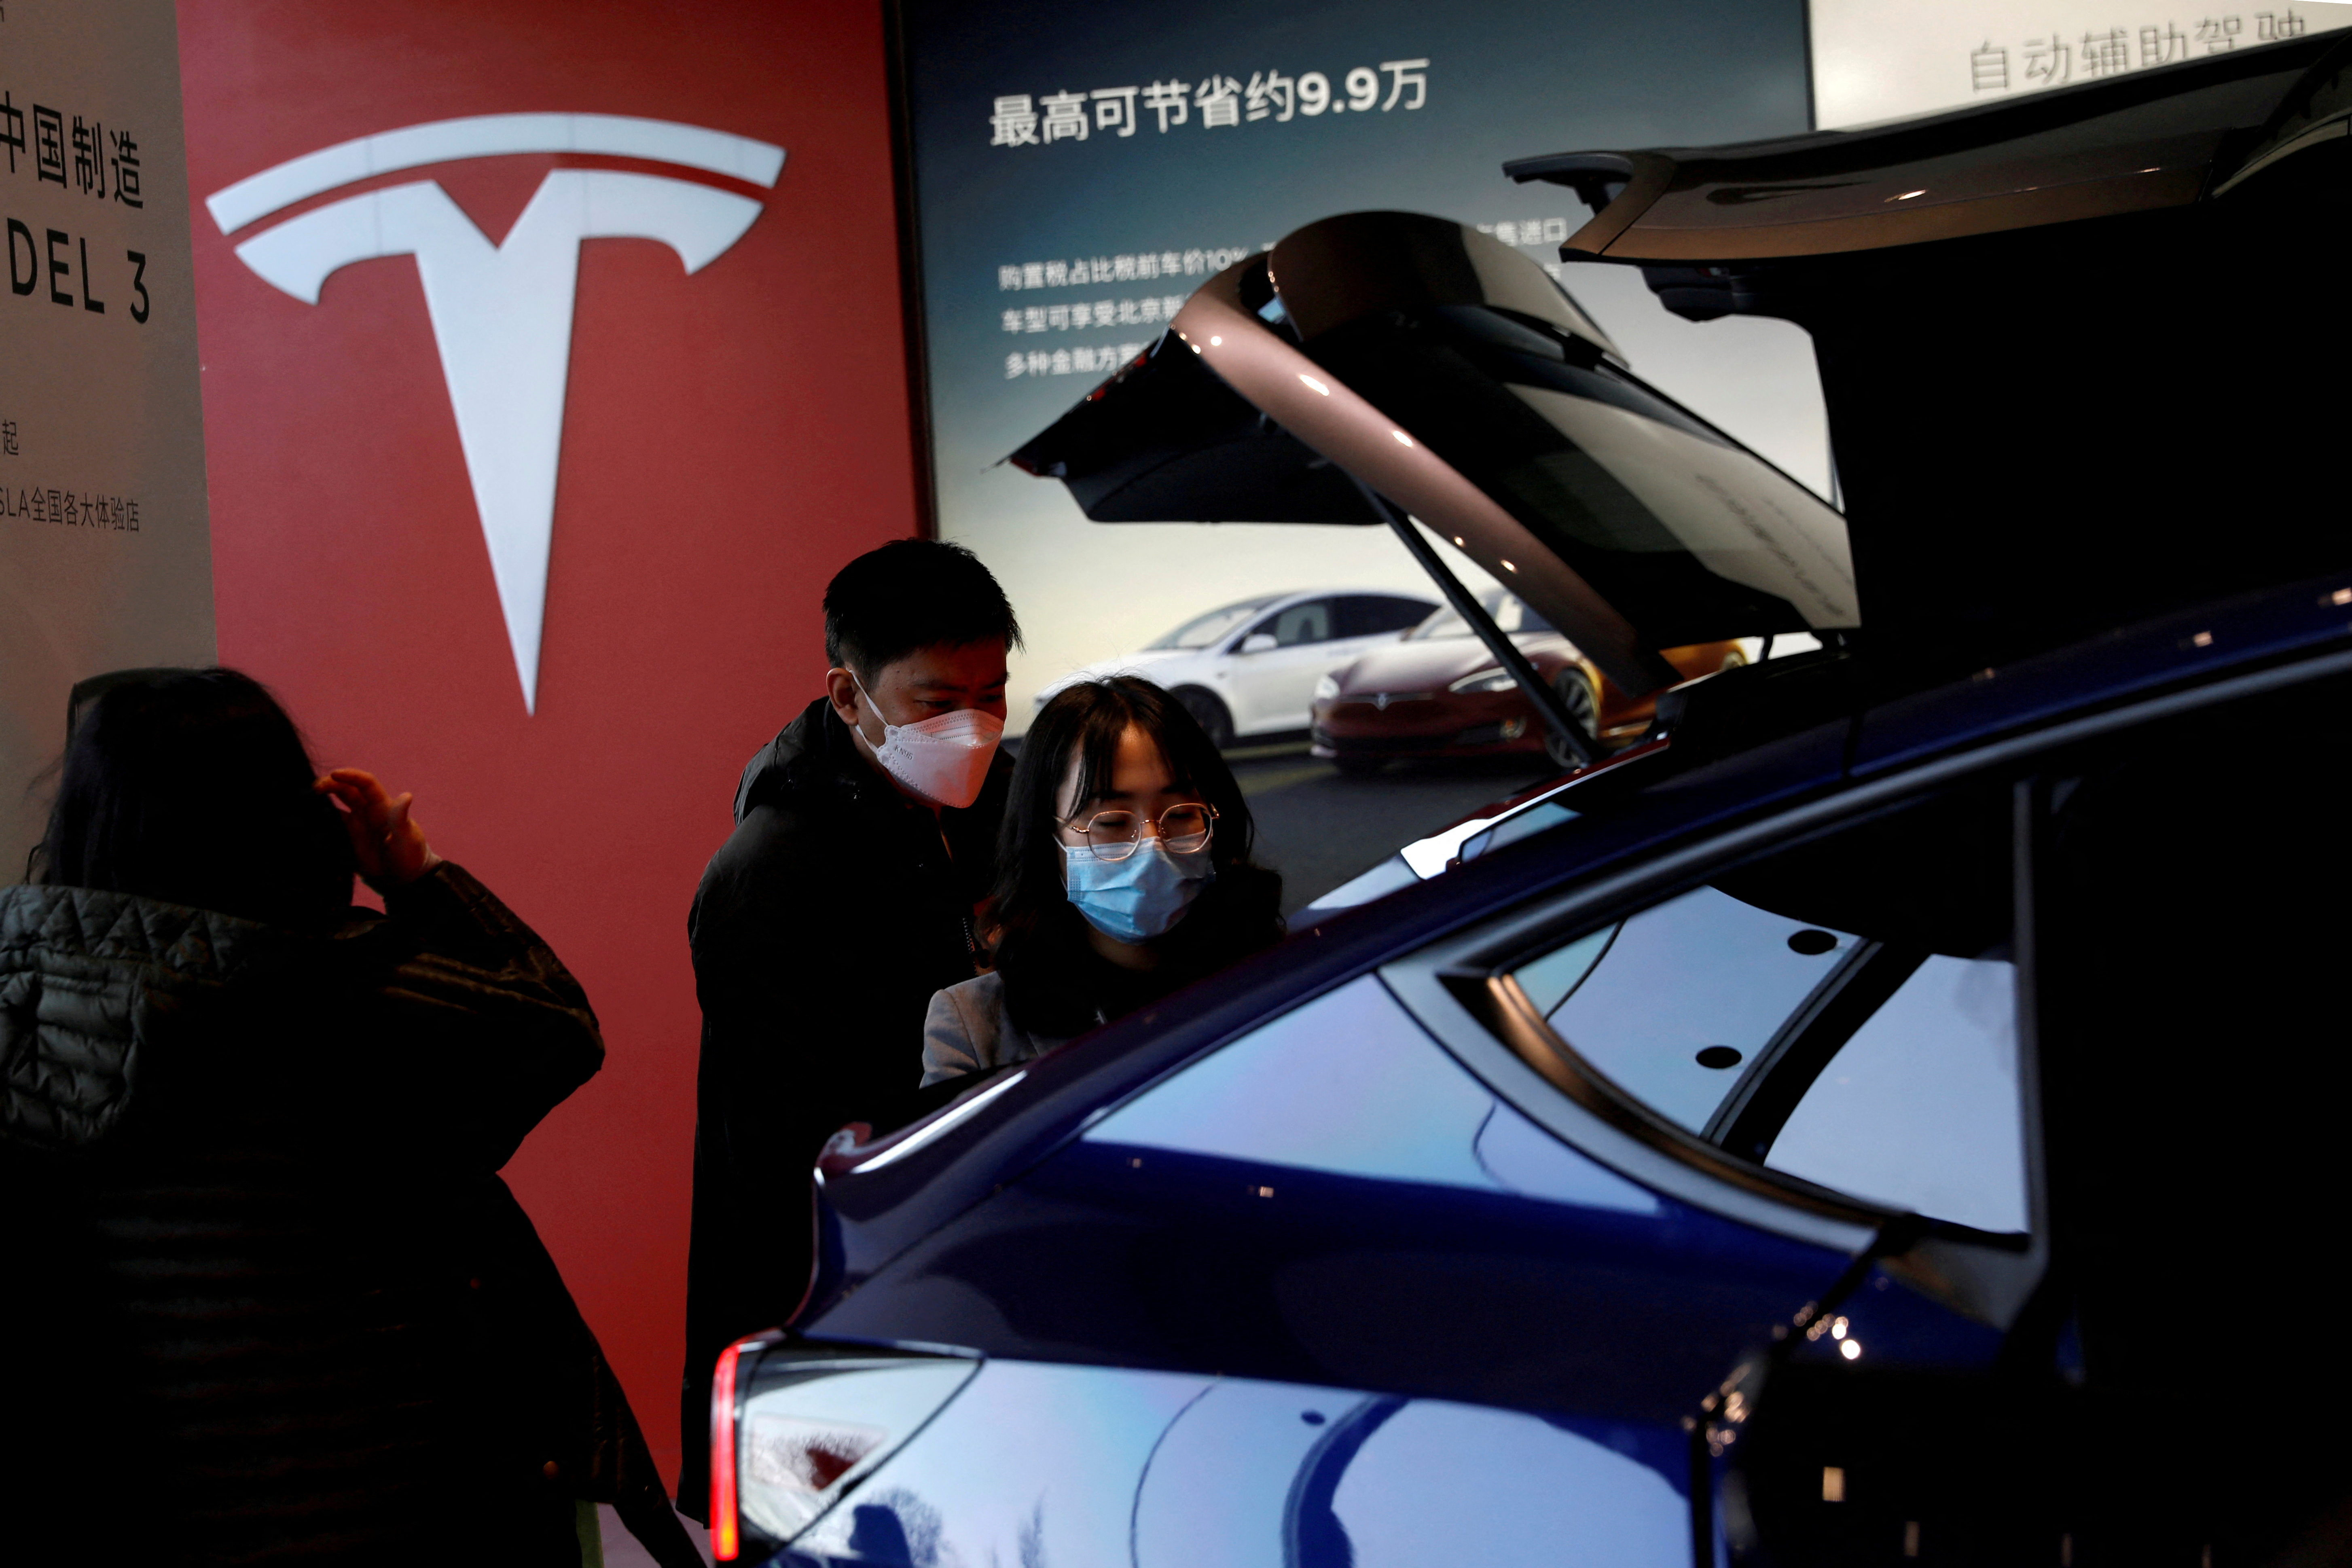 Des visiteurs portant des masques faciaux vérifient un véhicule utilitaire sport (SUV) Tesla Model Y fabriqué en Chine dans la salle d’exposition du constructeur de véhicules électriques à Pékin